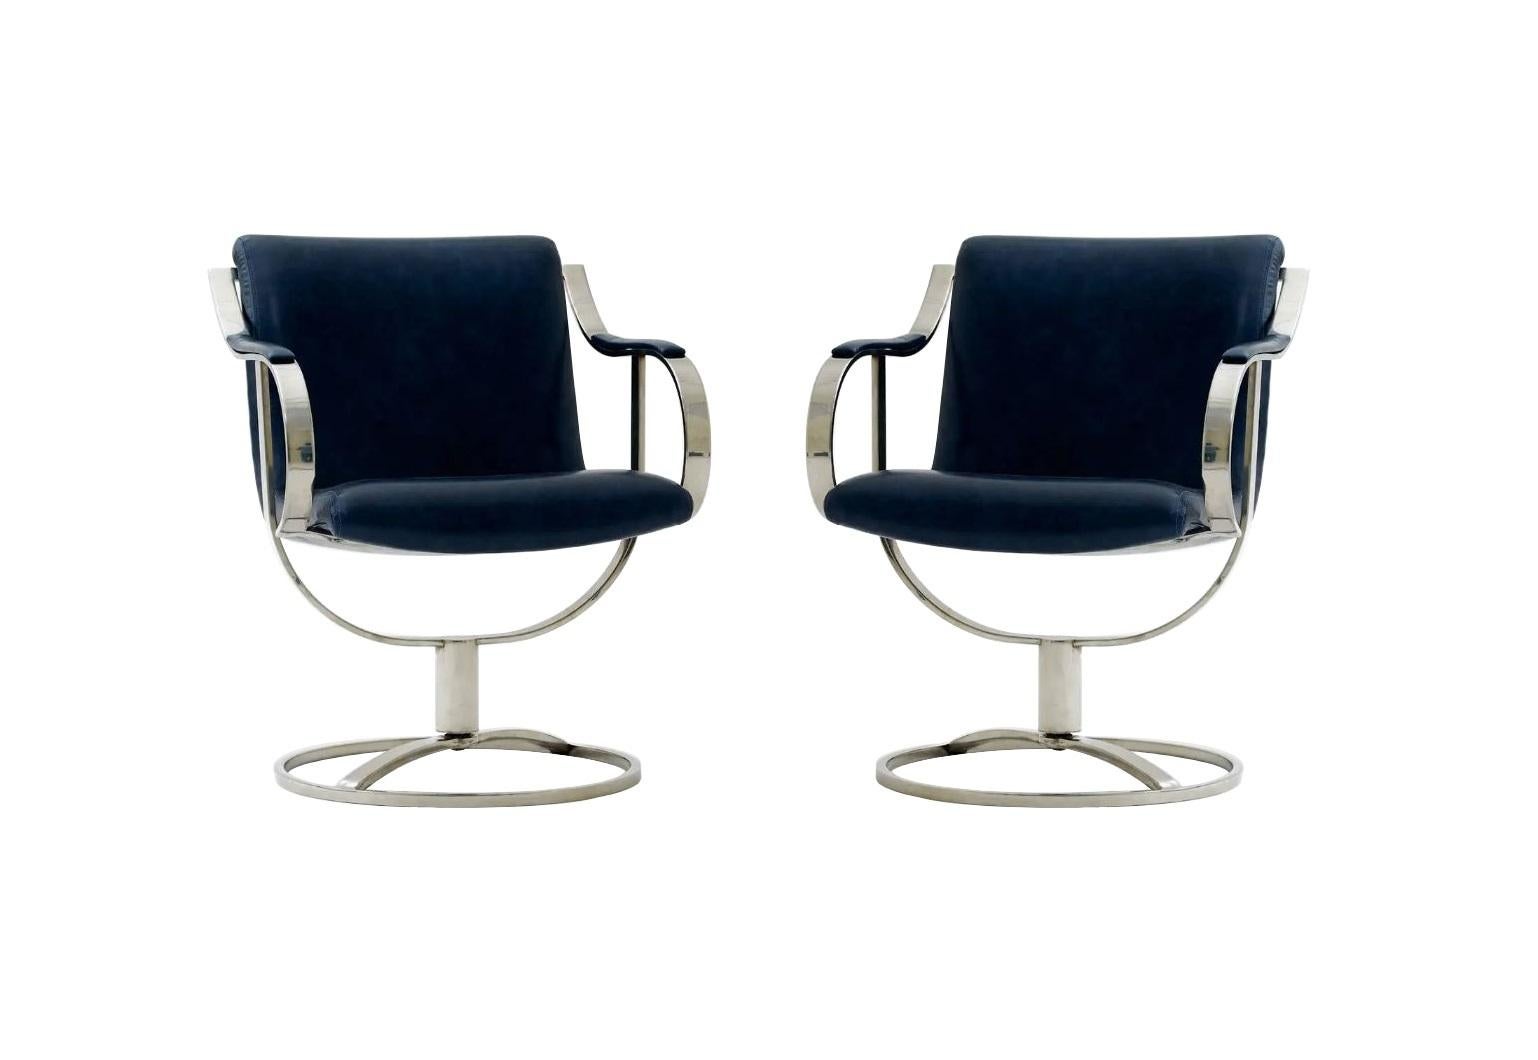 Ein Paar gut konstruierter Beistell-/Gaststühle Modell 455-211, entworfen von Gardner Leaver, hergestellt von der Firma Steelcase Furniture. Das kühne, geschwungene Design und die skulpturalen Gestelle aus verchromtem Stahl verleihen diesen